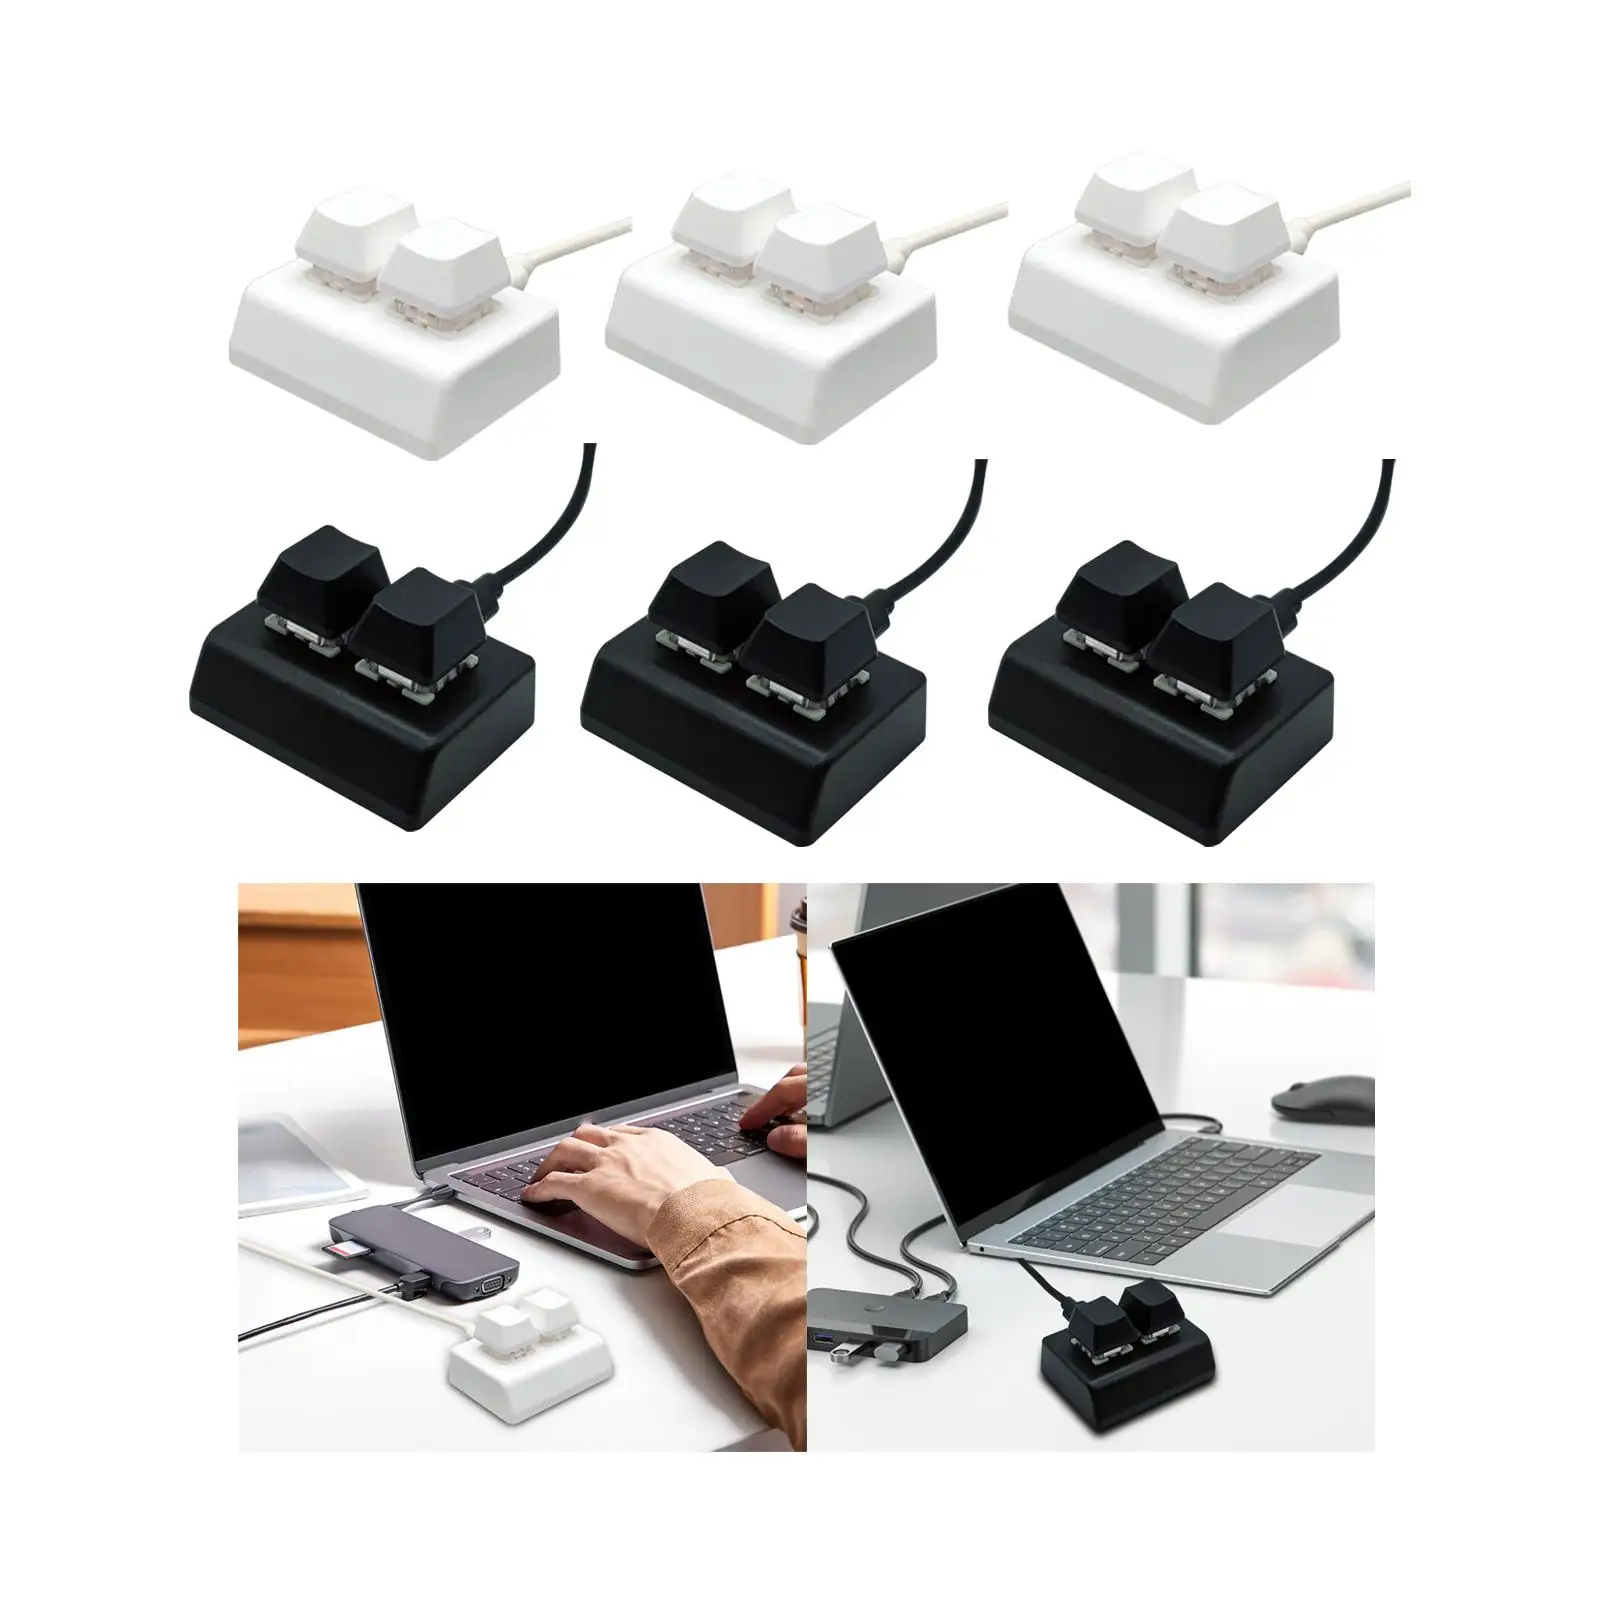 2 Key Type C Backlit Gaming USB Keyboard Programming Macro Keyboard for Audio Gaming Switch Drawing Programming Volume Control